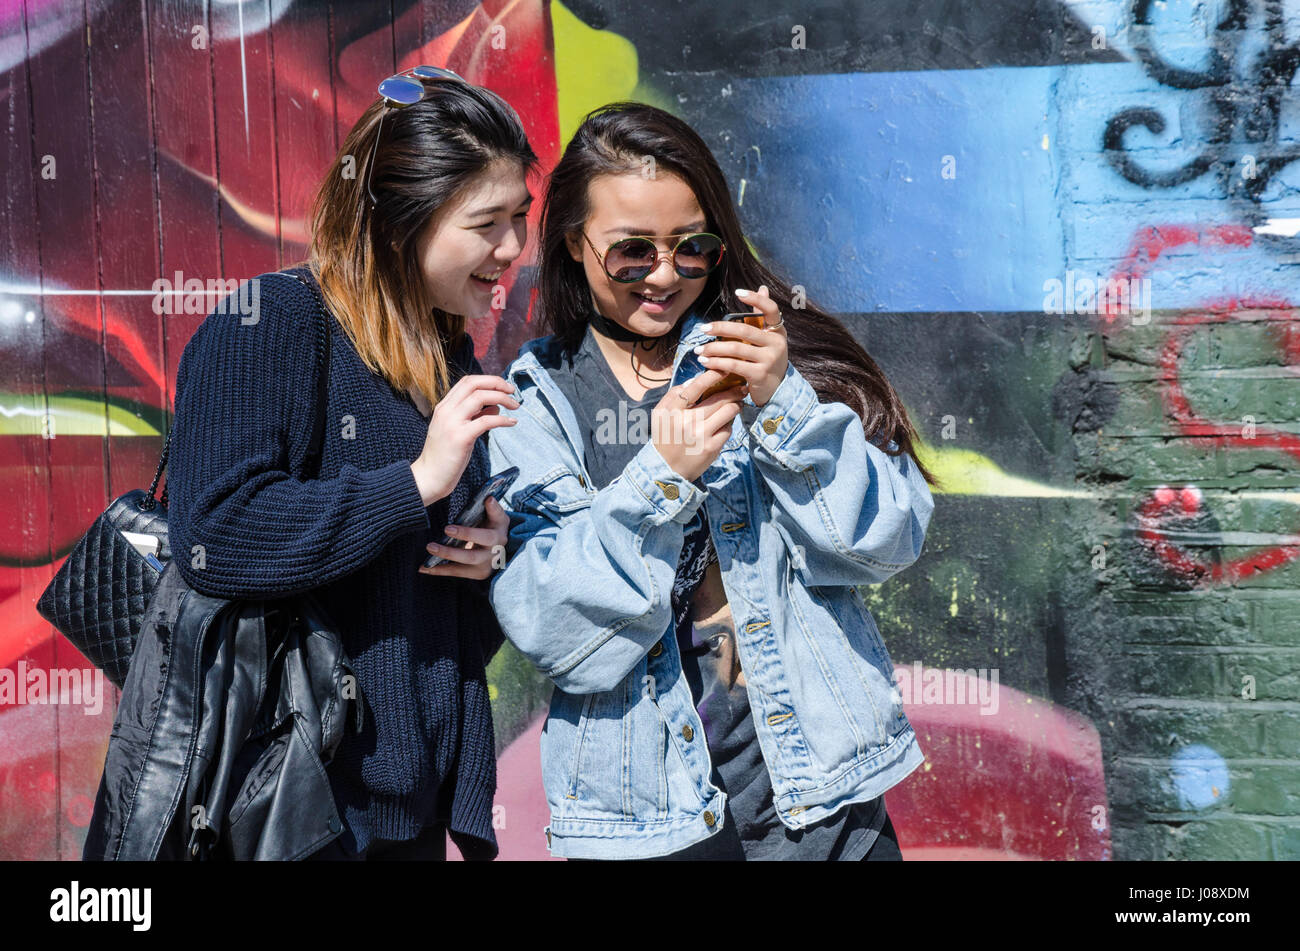 Ein paar Touristen Freunde stehen und bewundern Sie ein Selbstporträt, das sie gerade auf einem Smartphone vor der street Art an Wänden in der Nähe von Brick Lane genommen haben. Stockfoto